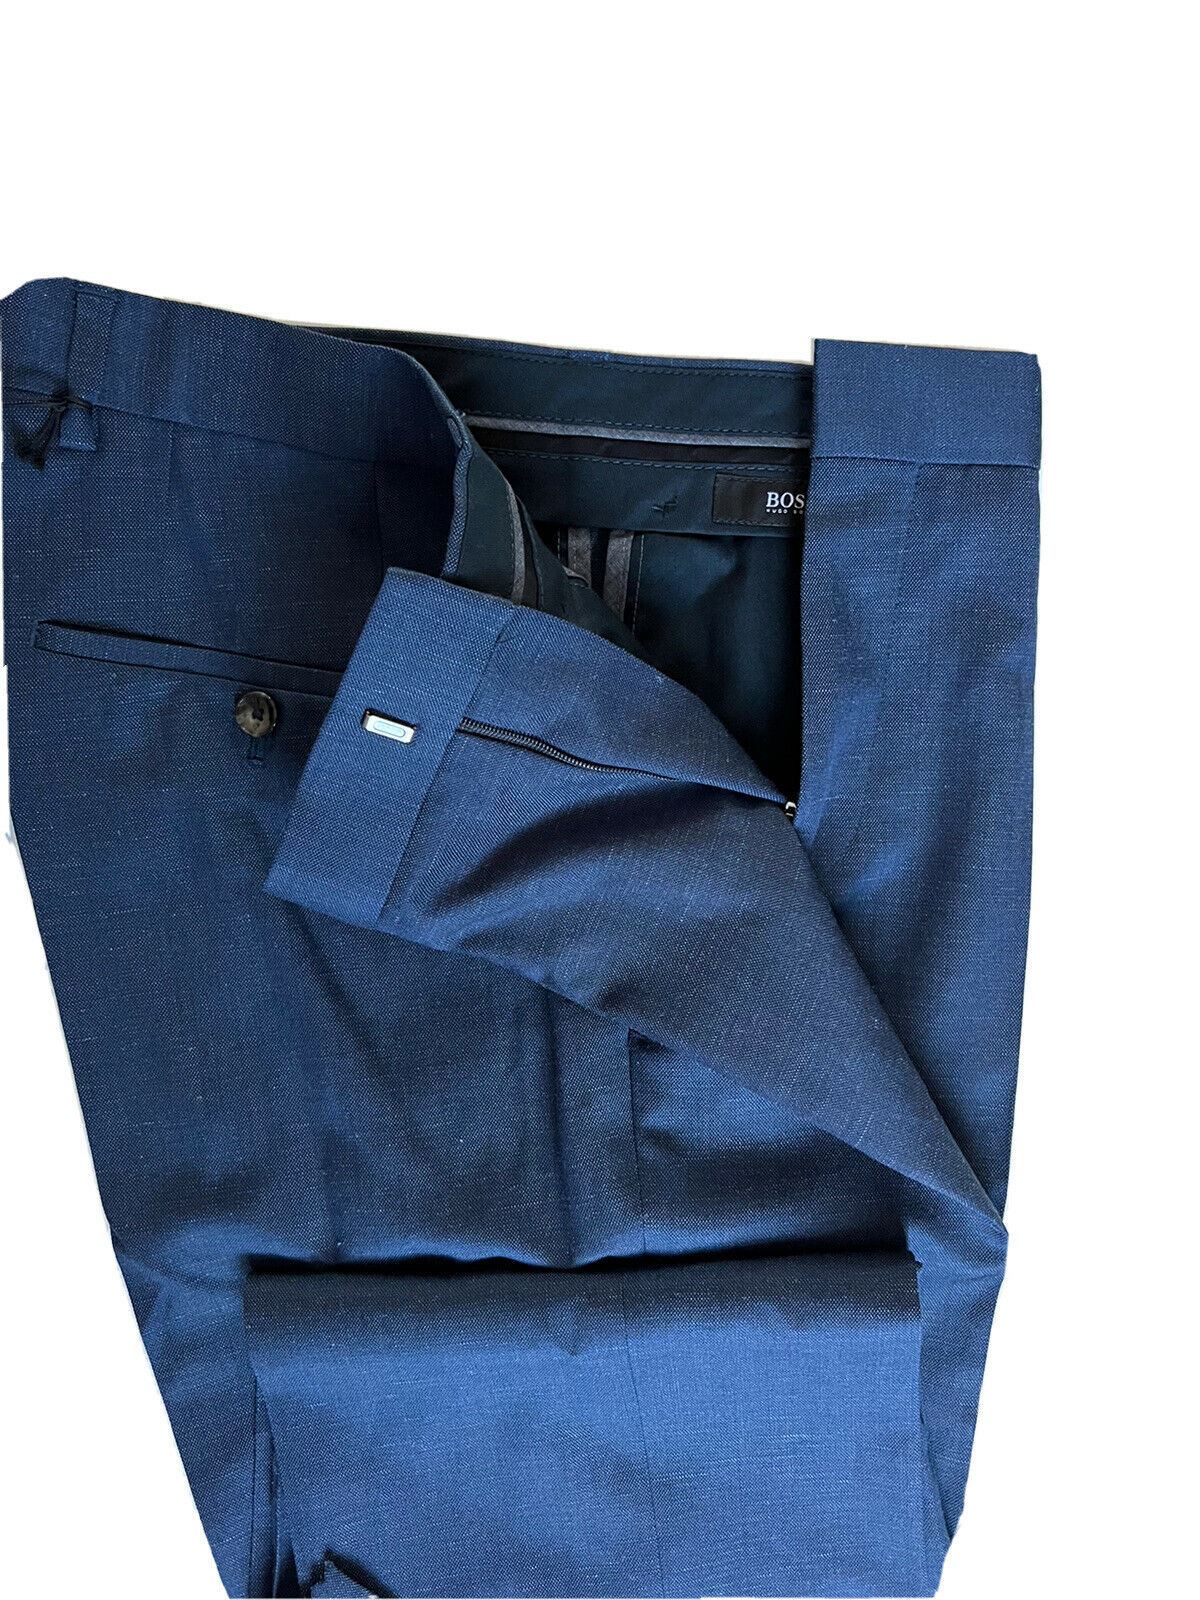 СЗТ $245 Boss Hugo Boss Genesis4 Мужские синие классические брюки из шерсти/льна, размер 30 США